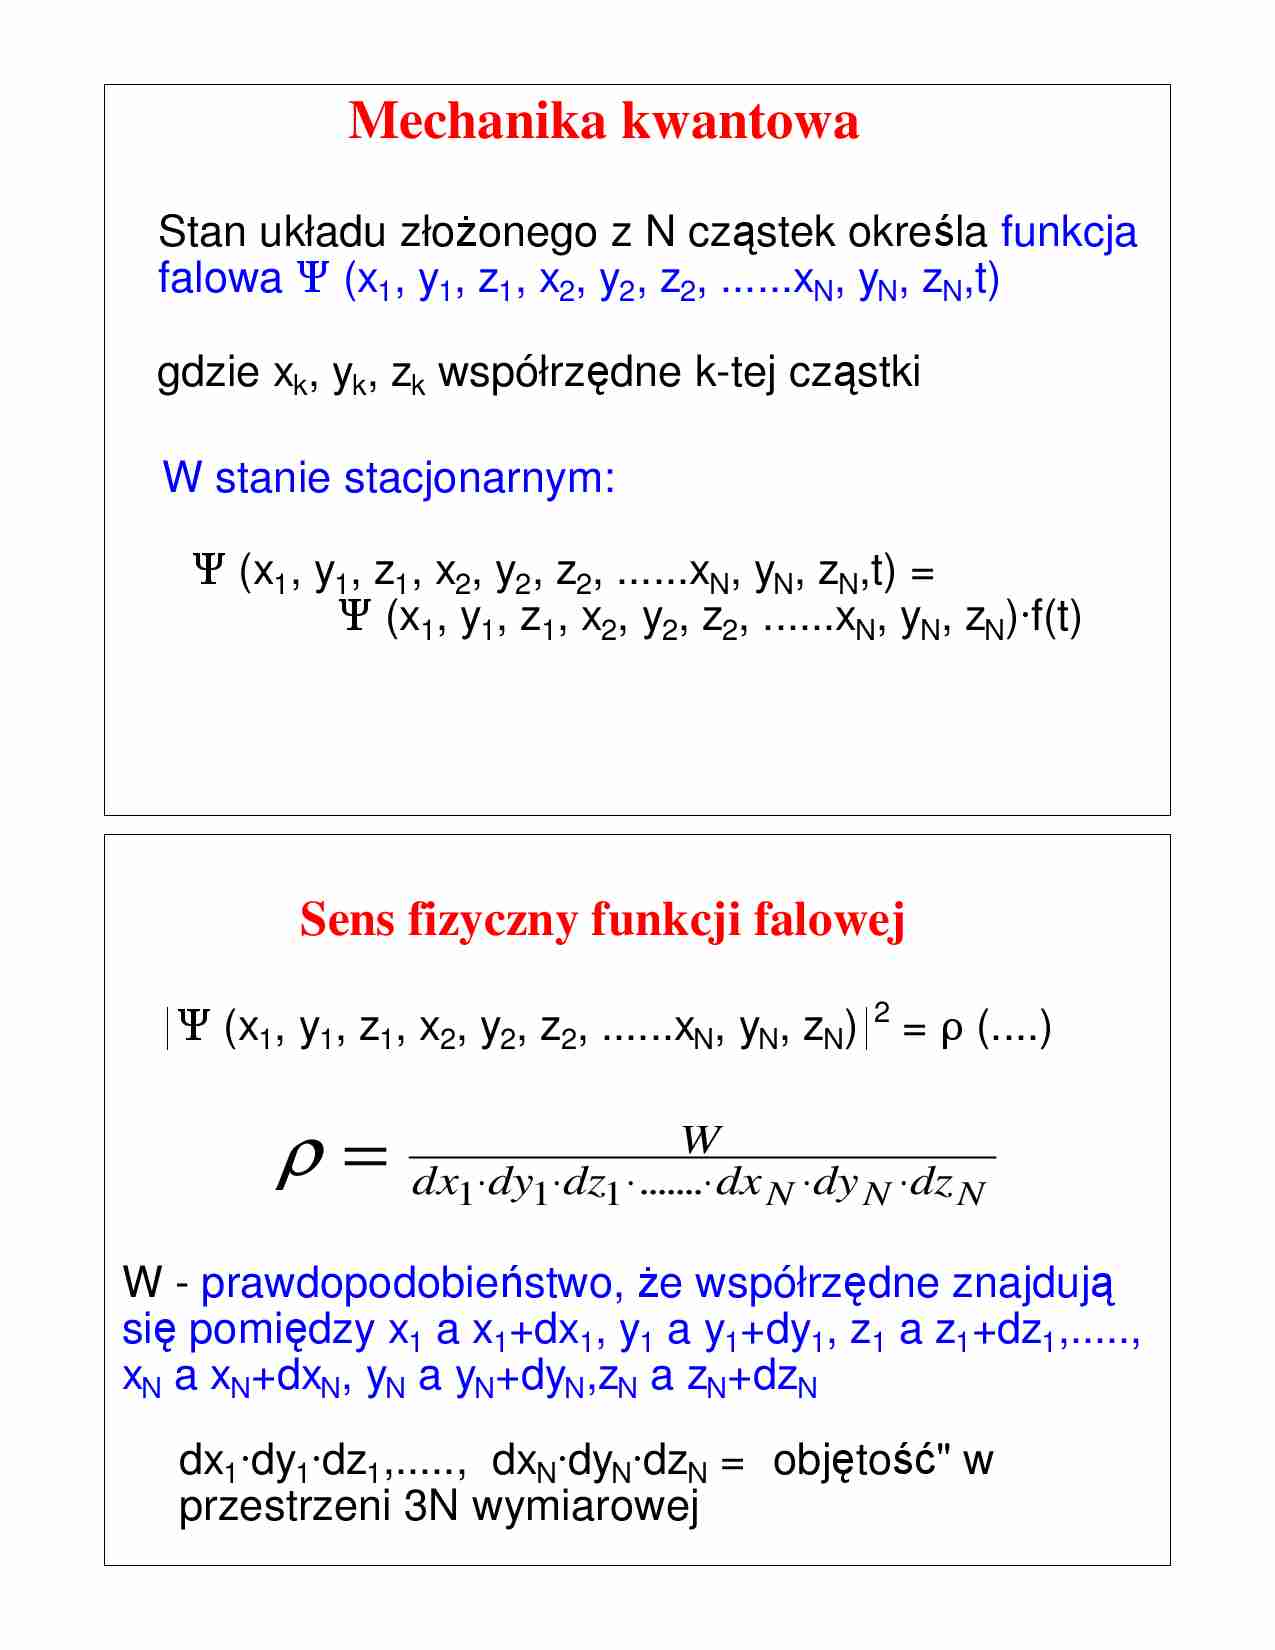  Mechanika kwantowa - wykład - strona 1